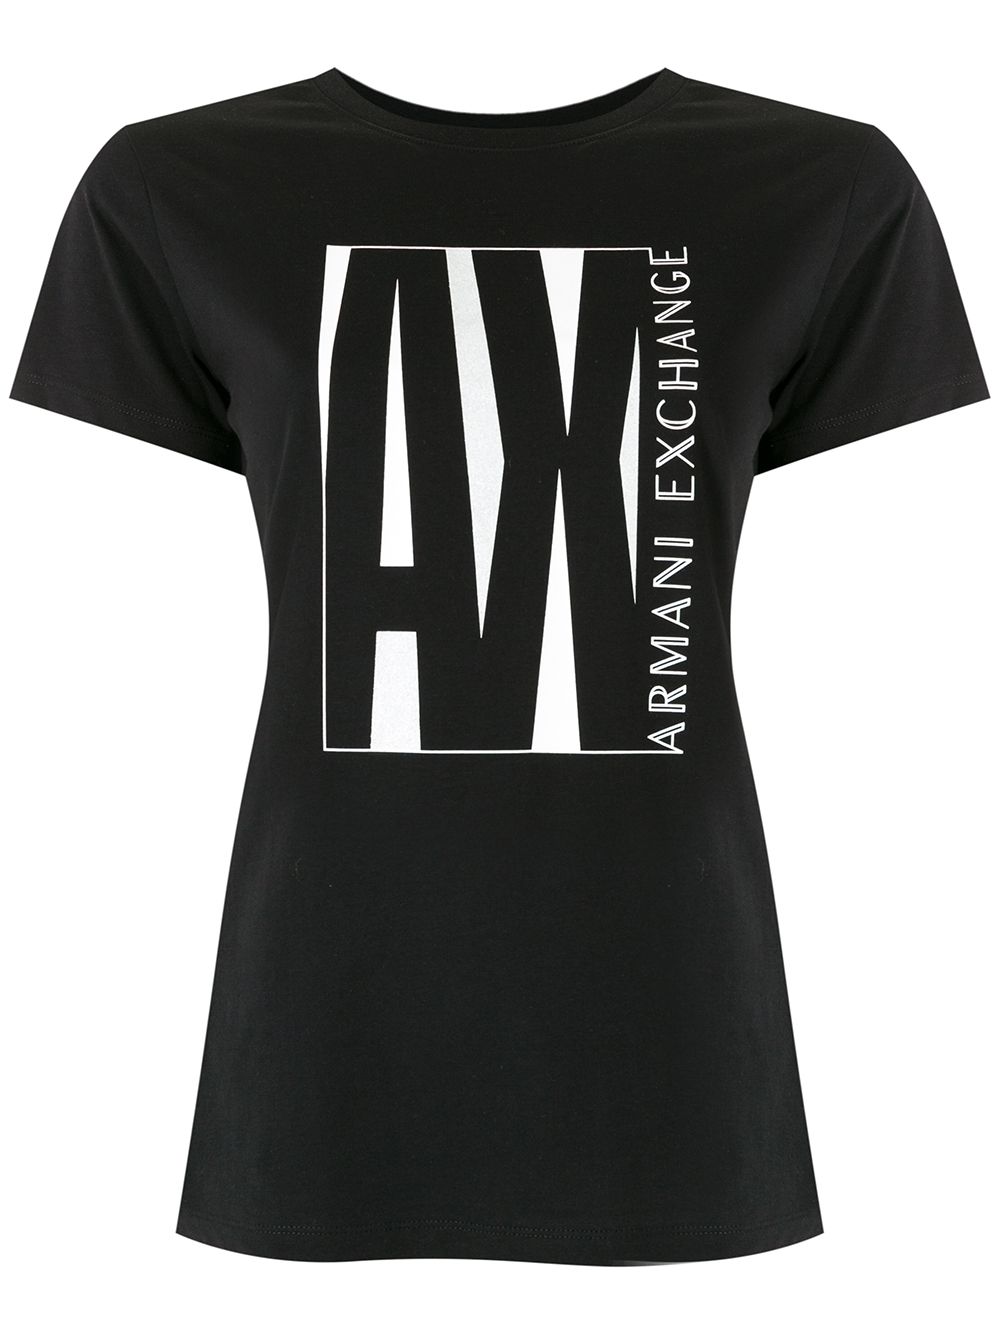 фото Armani exchange футболка с логотипом